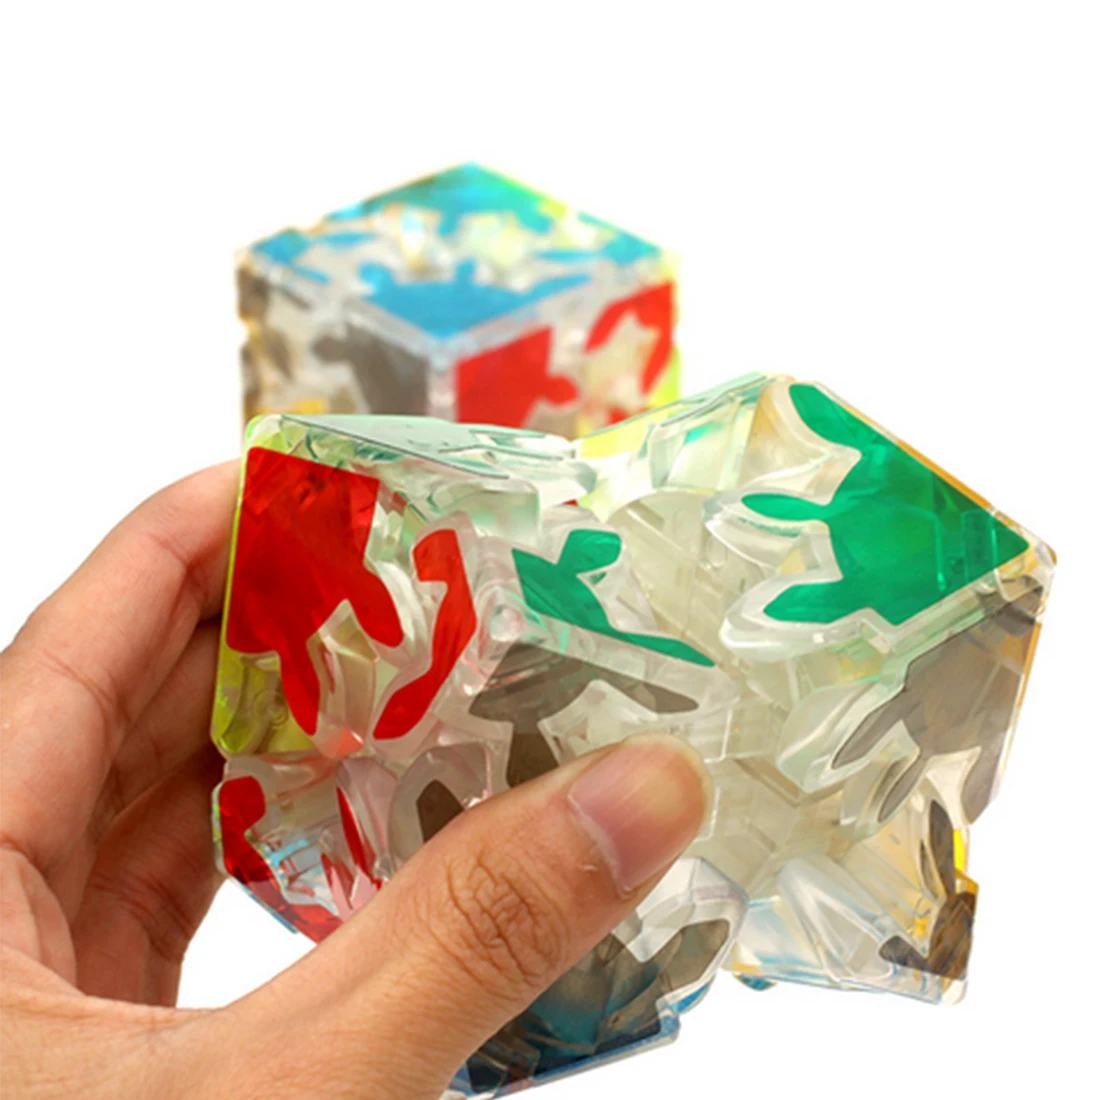 Прозрачный 2x2 магический Шестерни кубическая Головоломка с быстрым кубом игрушка прозрачные наклейки в форме Куба